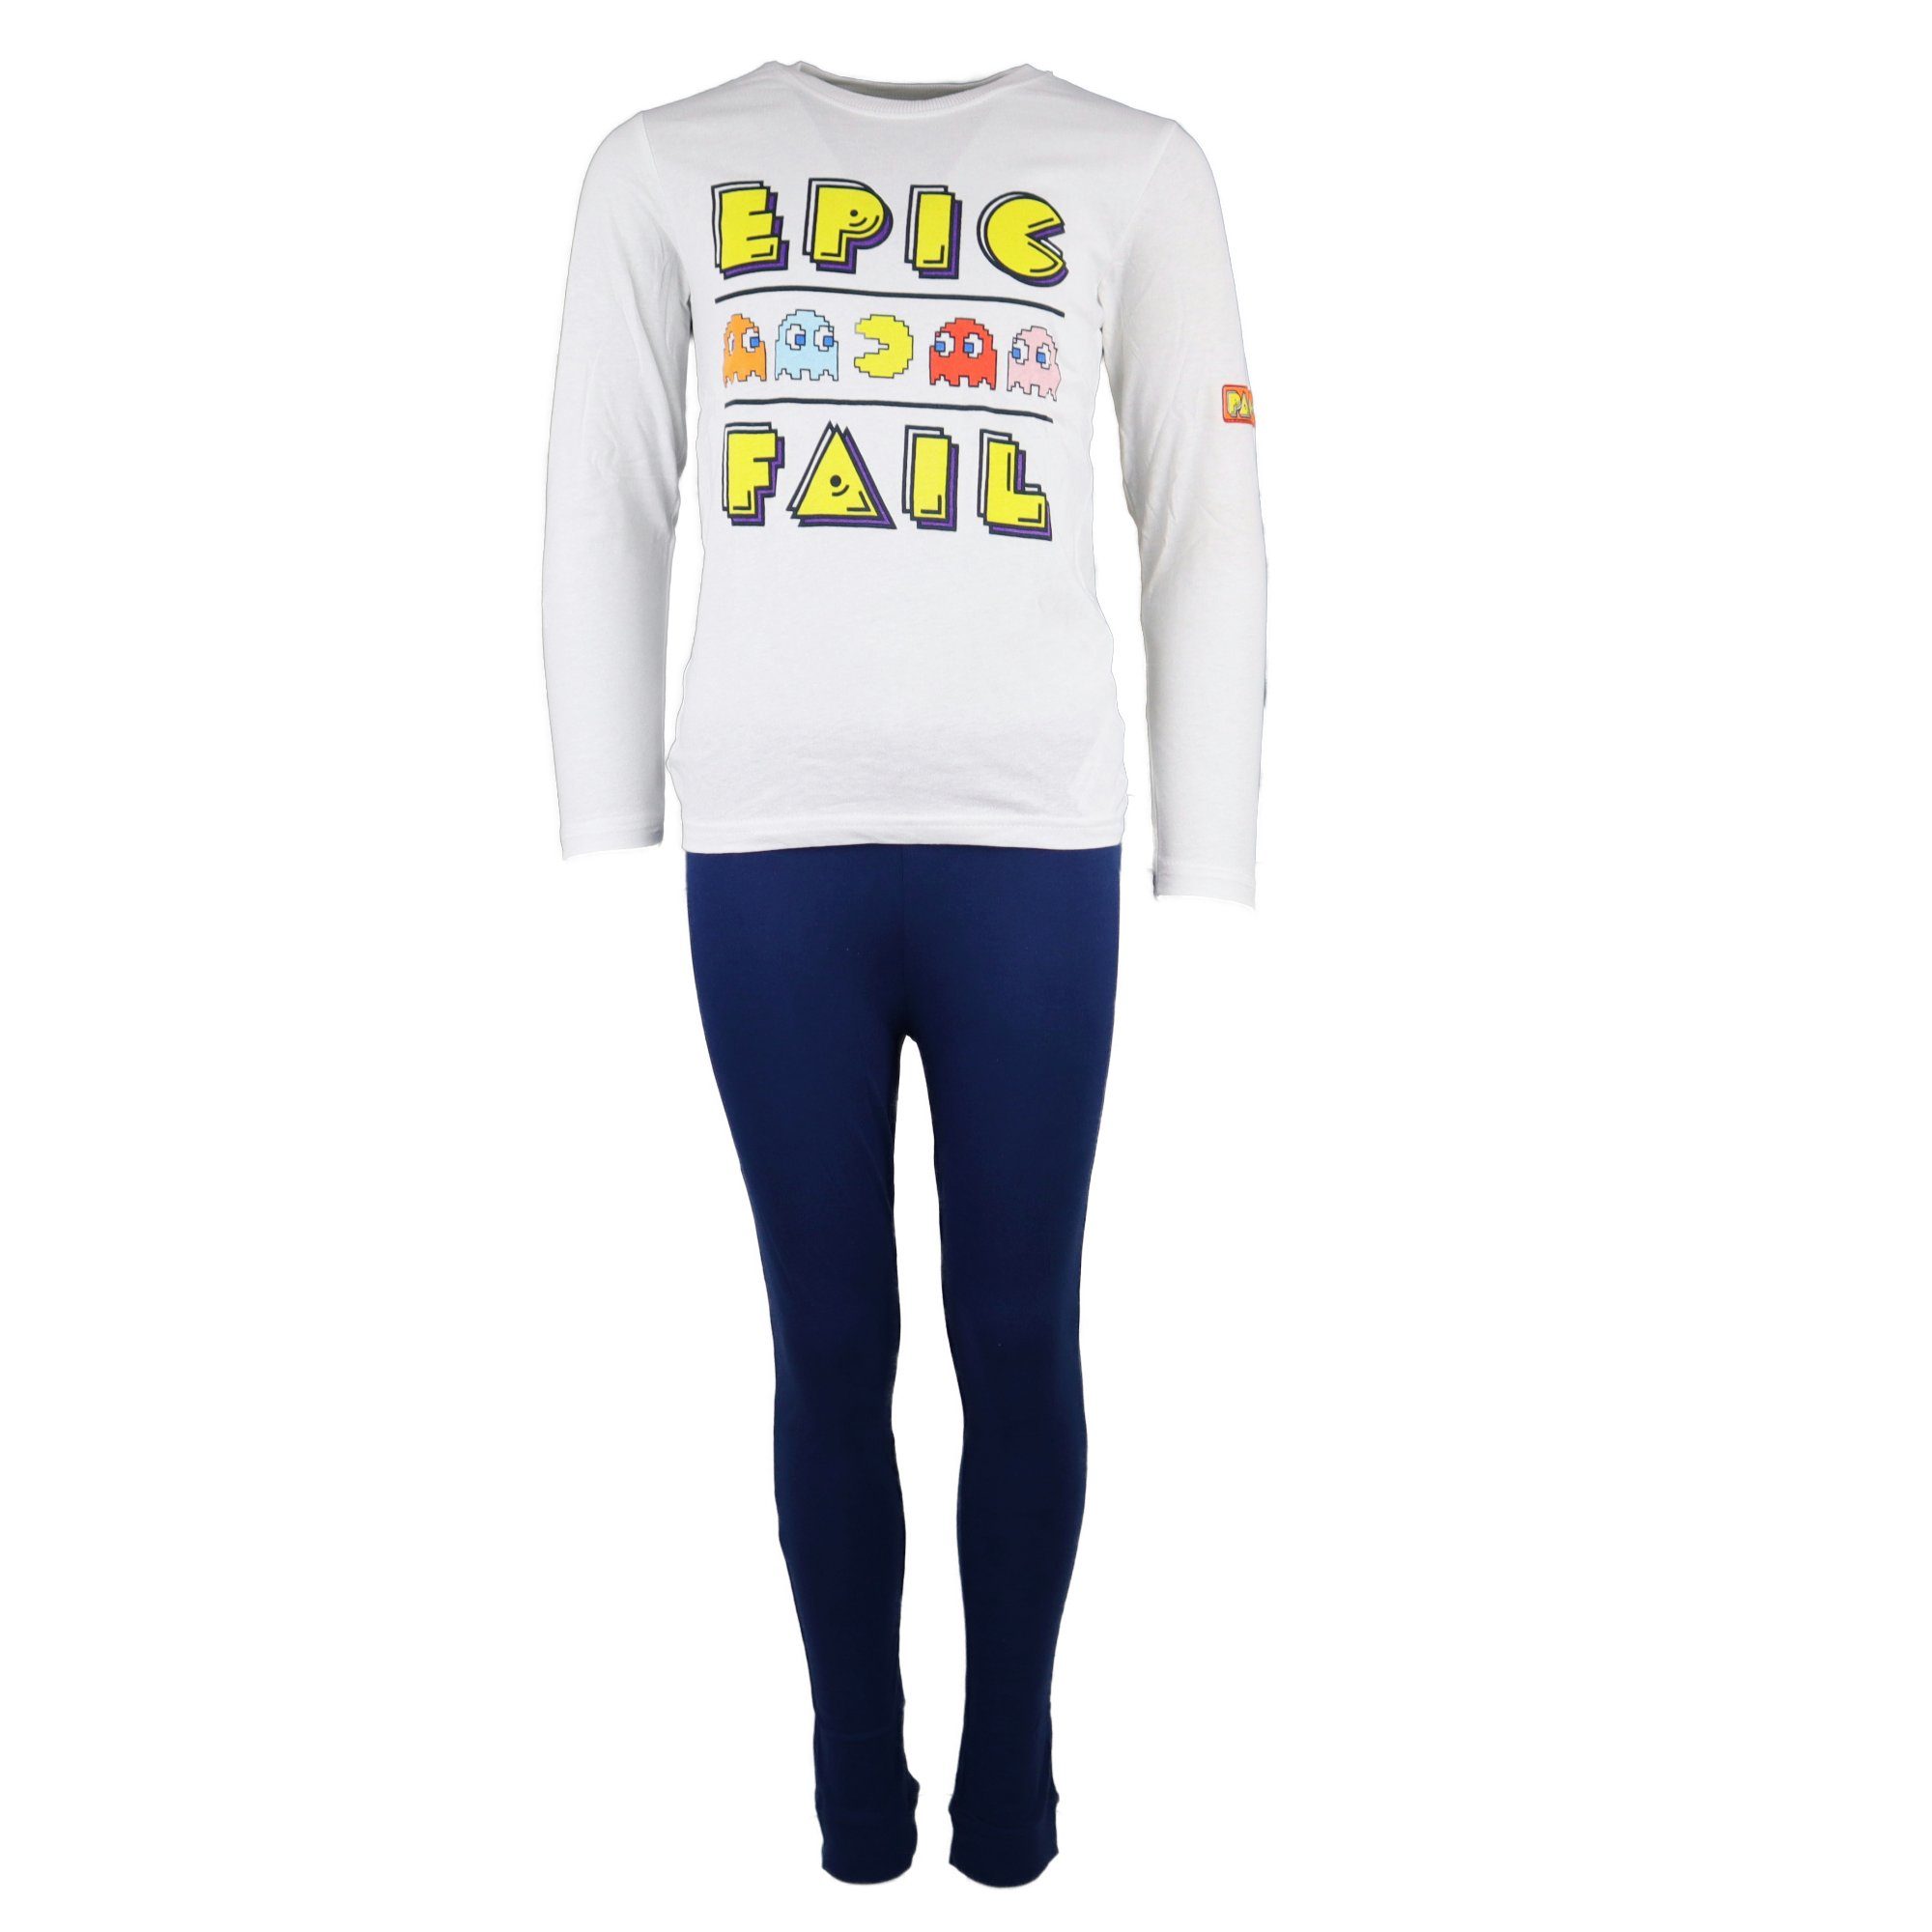 EplusM Schlafanzug Pacman Epic Fail Kinder Jugend Pyjama Gr. 128 bis 158, 100% Baumwolle, Weiß Blau